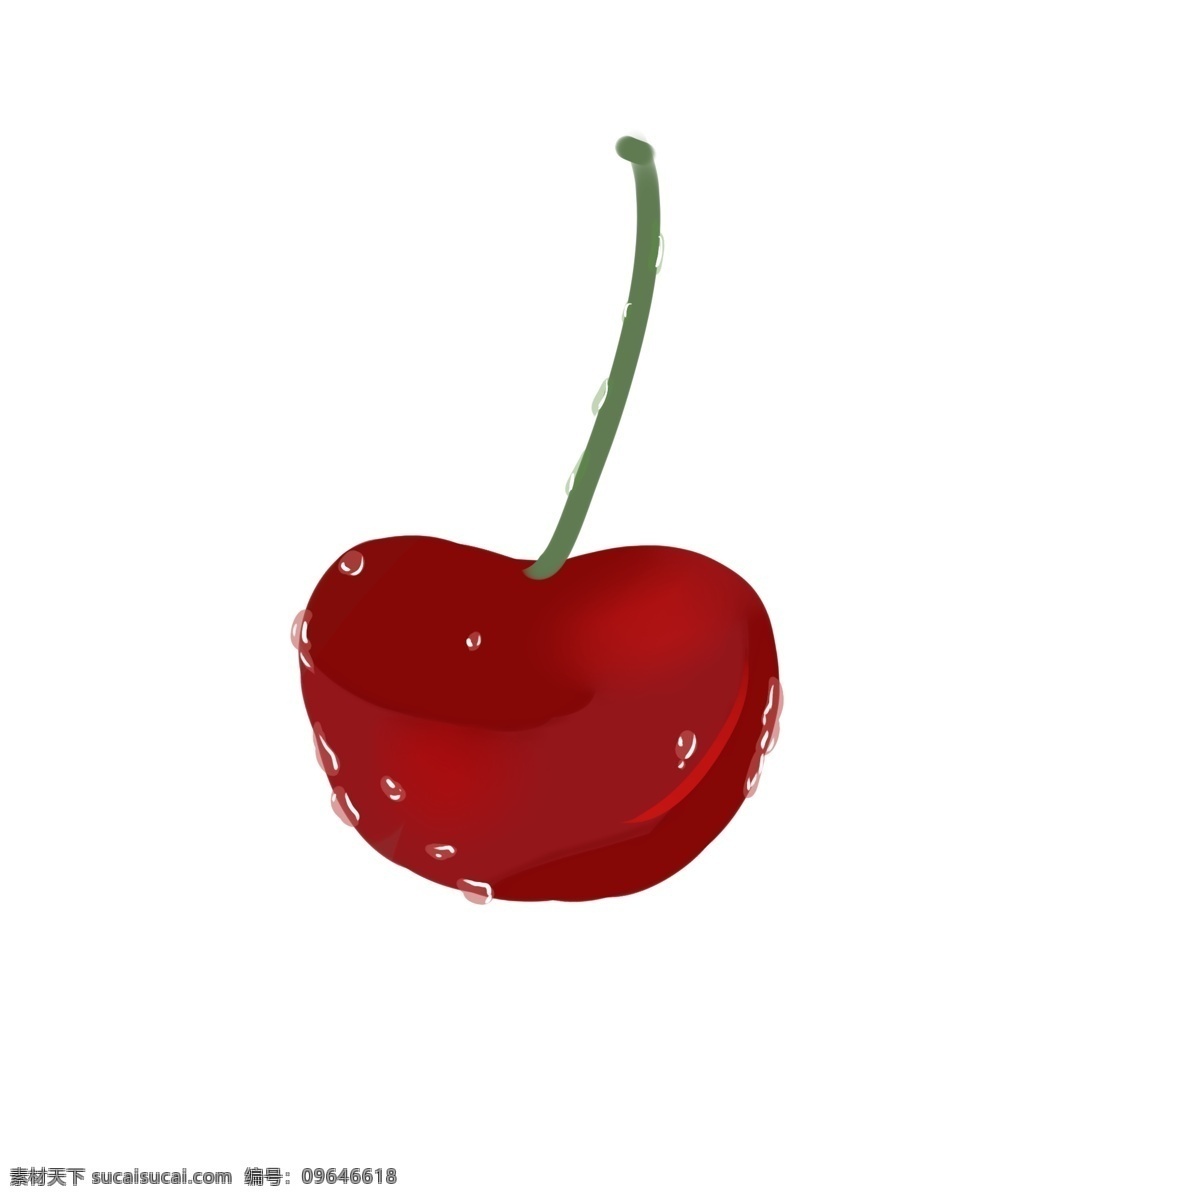 樱桃 维生素 红色 装饰画 卡通 装饰 大自然 培育 甜 圆形 绿色 可爱 清新 味道 水果 植物 种植 生长 绿色食品